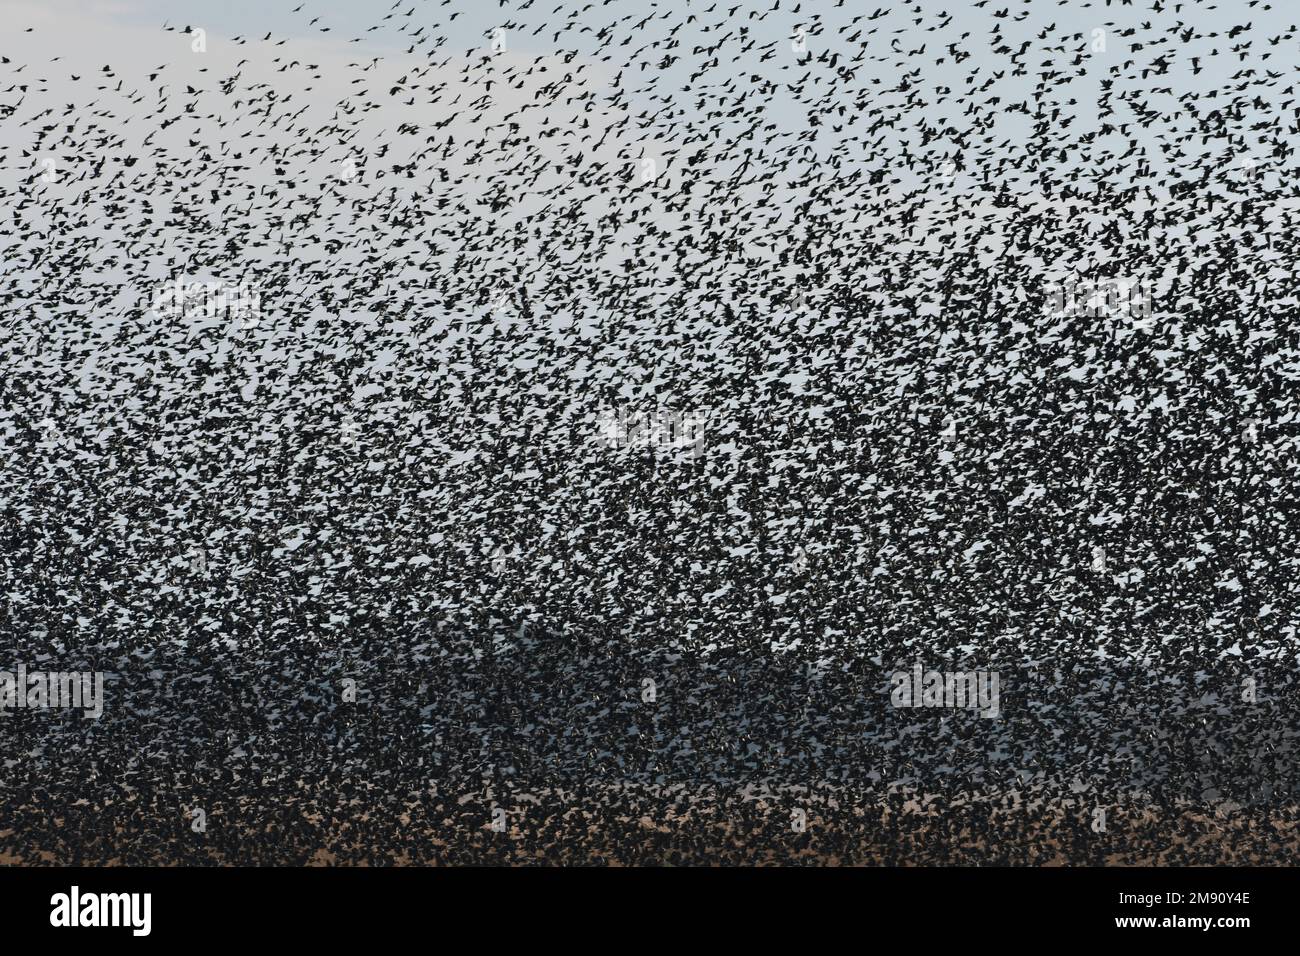 Tonnellate di gralle e uccelli neri con ali rosse si riversano in volo Foto Stock